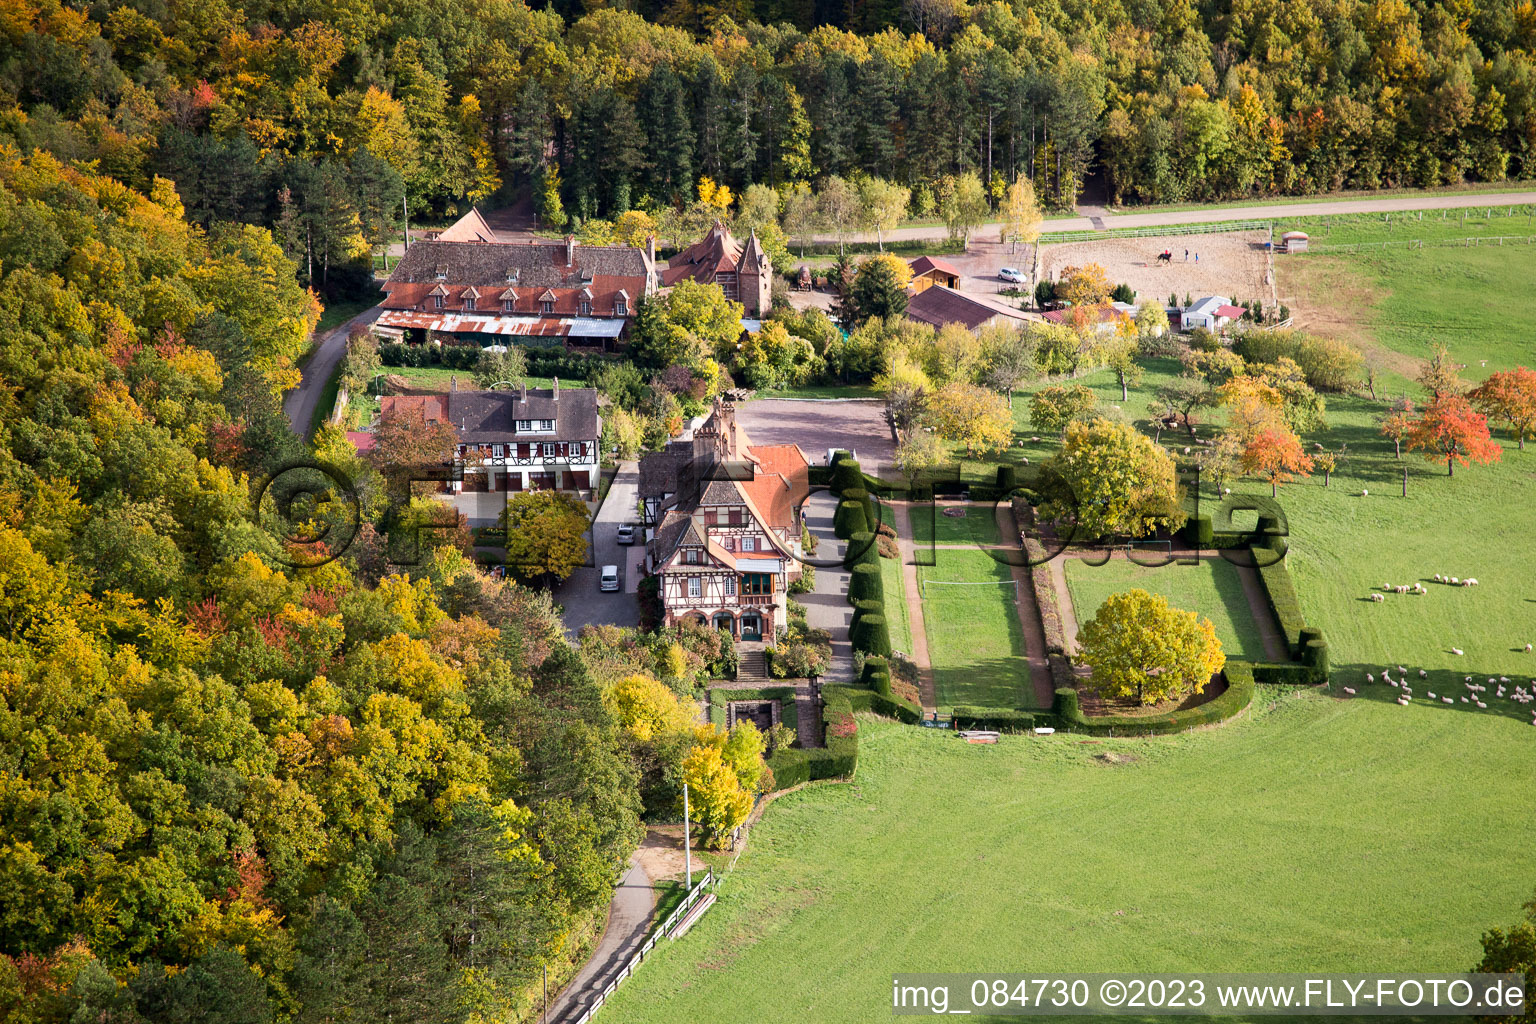 Luftbild von Niederbronn-les-Bains, Centre rencontre Albert Schweitzer im Bundesland Bas-Rhin, Frankreich